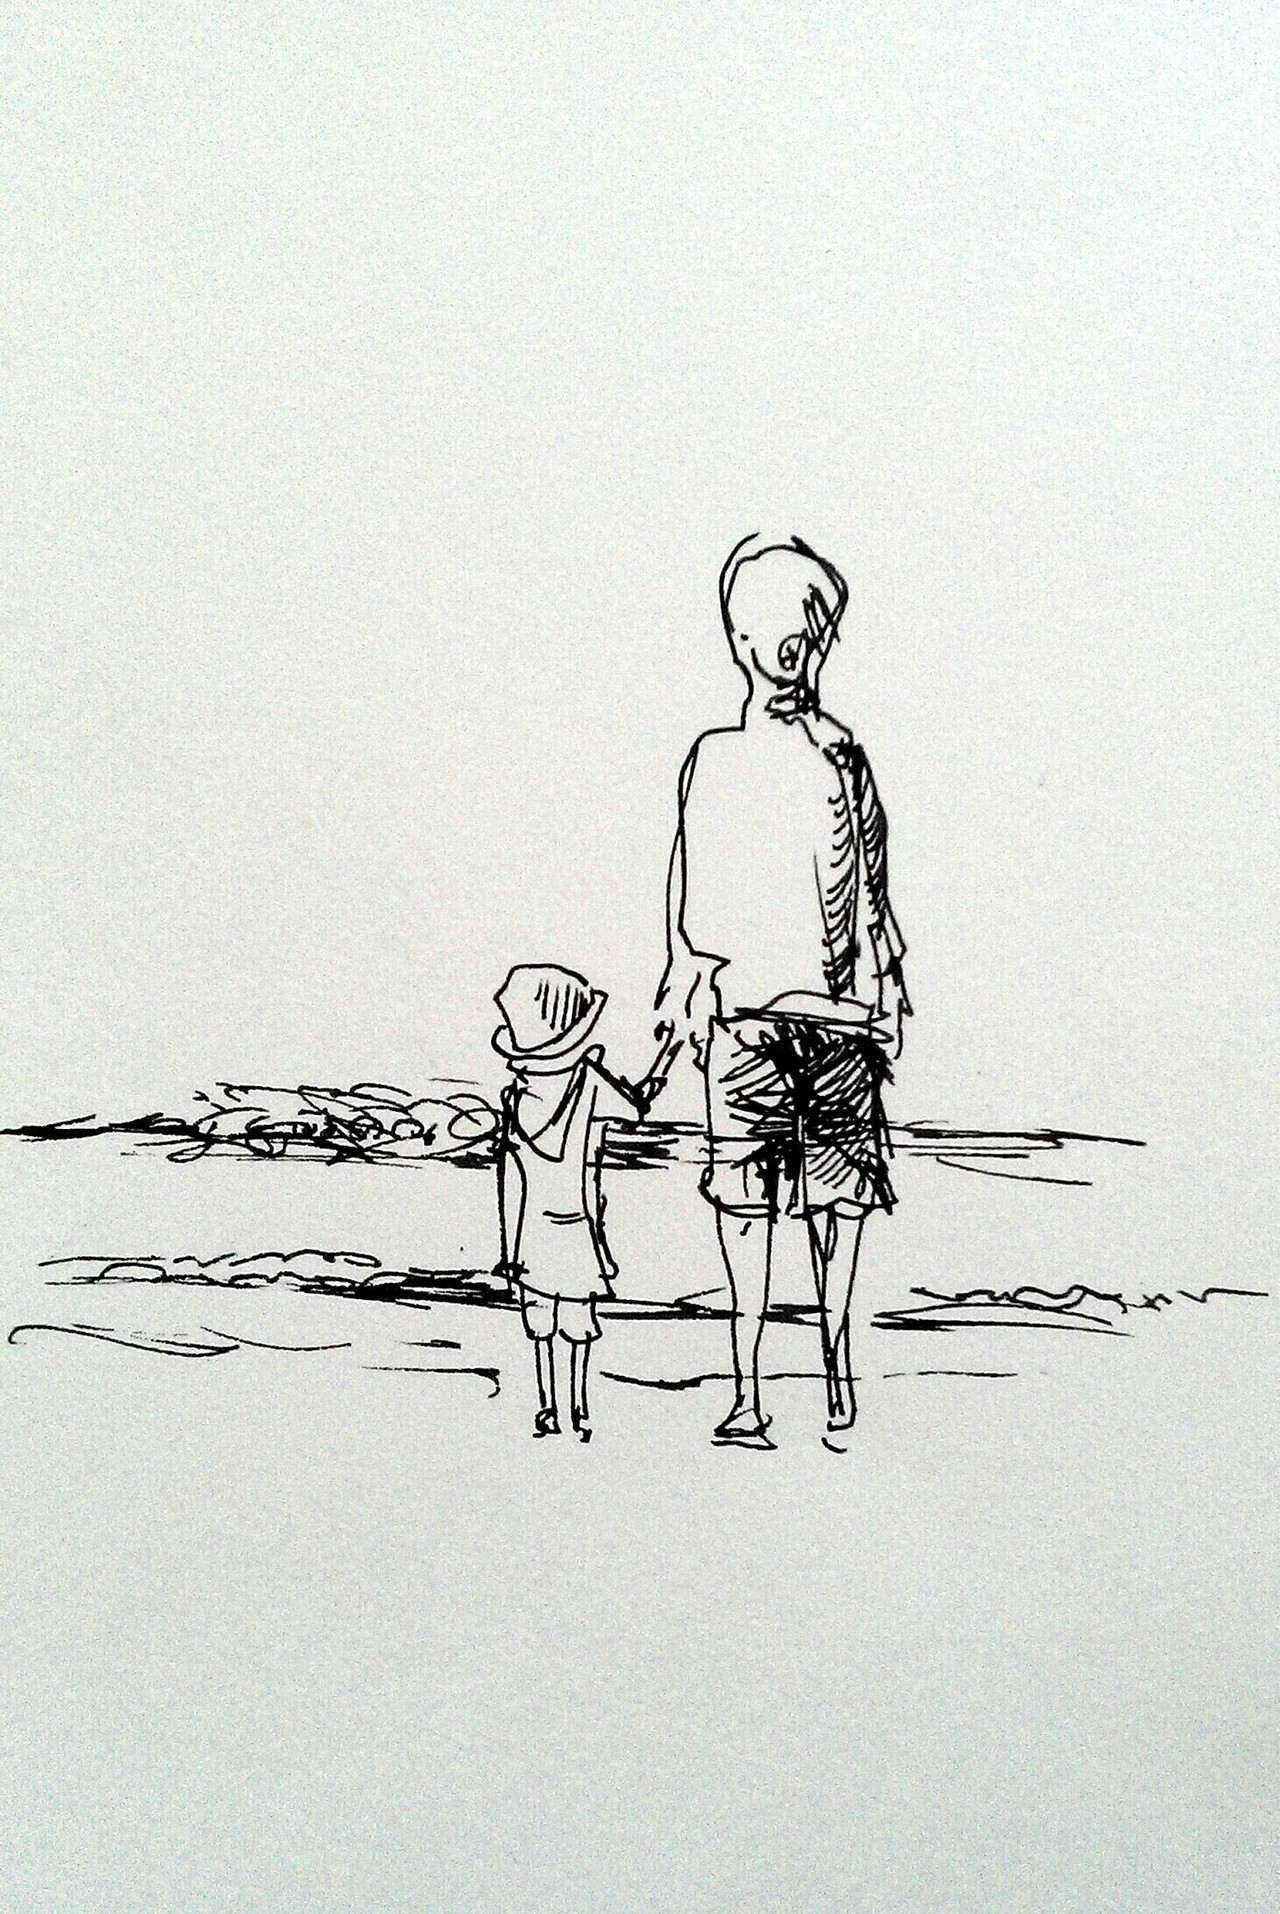 Ouder en kind op de rug gezien, ze staan hand in hand en kijken uit over de zee